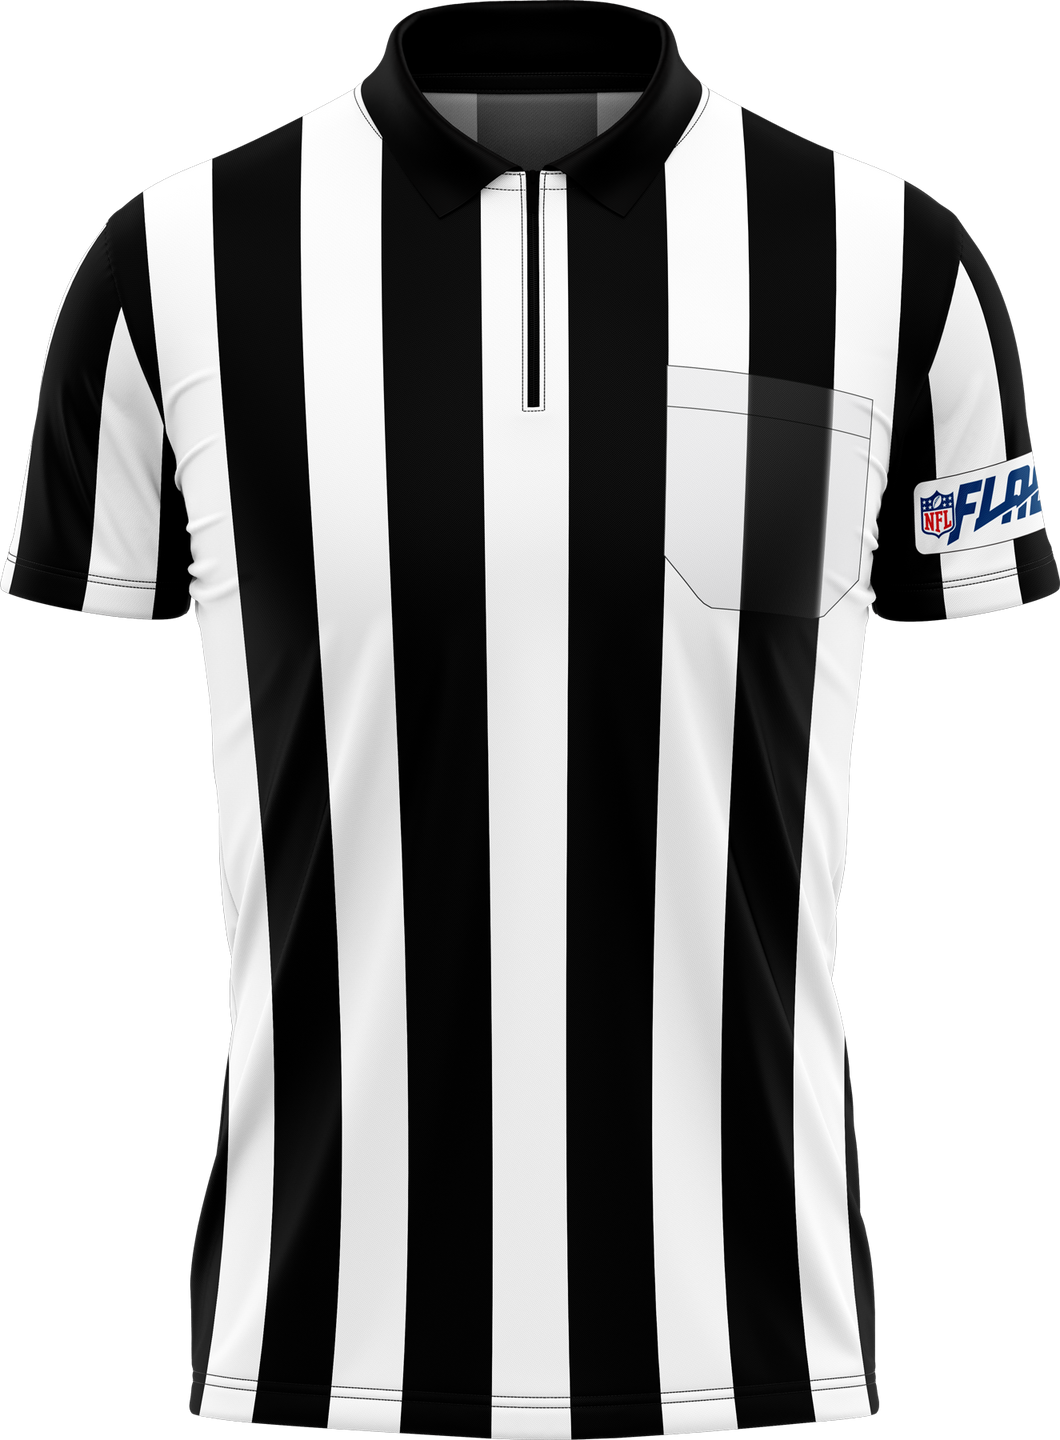 NFL FLAG Officials Shirt